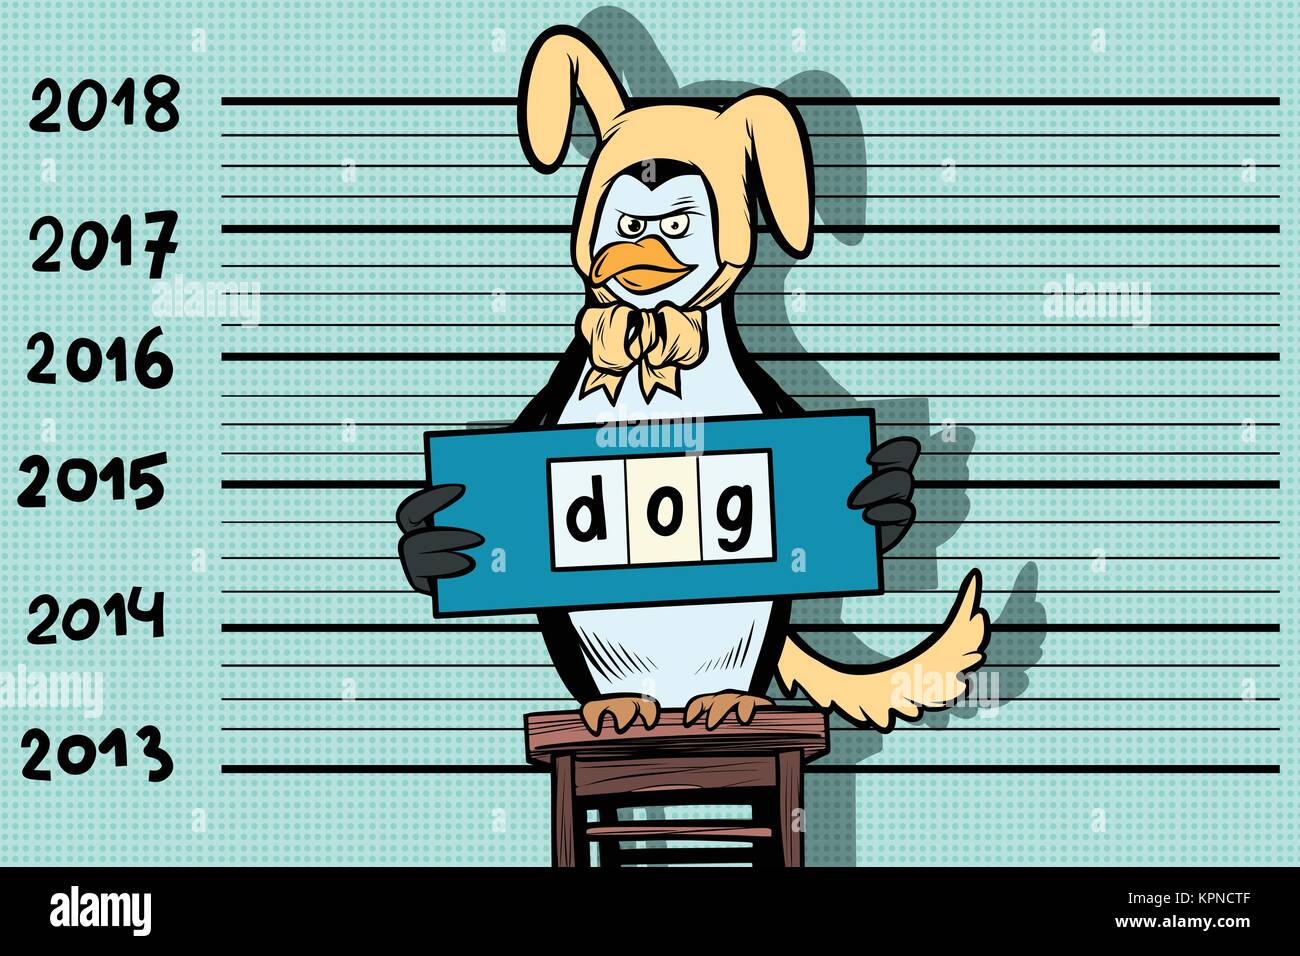 2018 Neues Jahr, lustige Pinguin vortäuschte, die gelbe Erde Hund zu sein. Kriminelle Fotos. Gefängnis und verhaften. Comic cartoon Pop Art retro Vektor illustr Stock Vektor